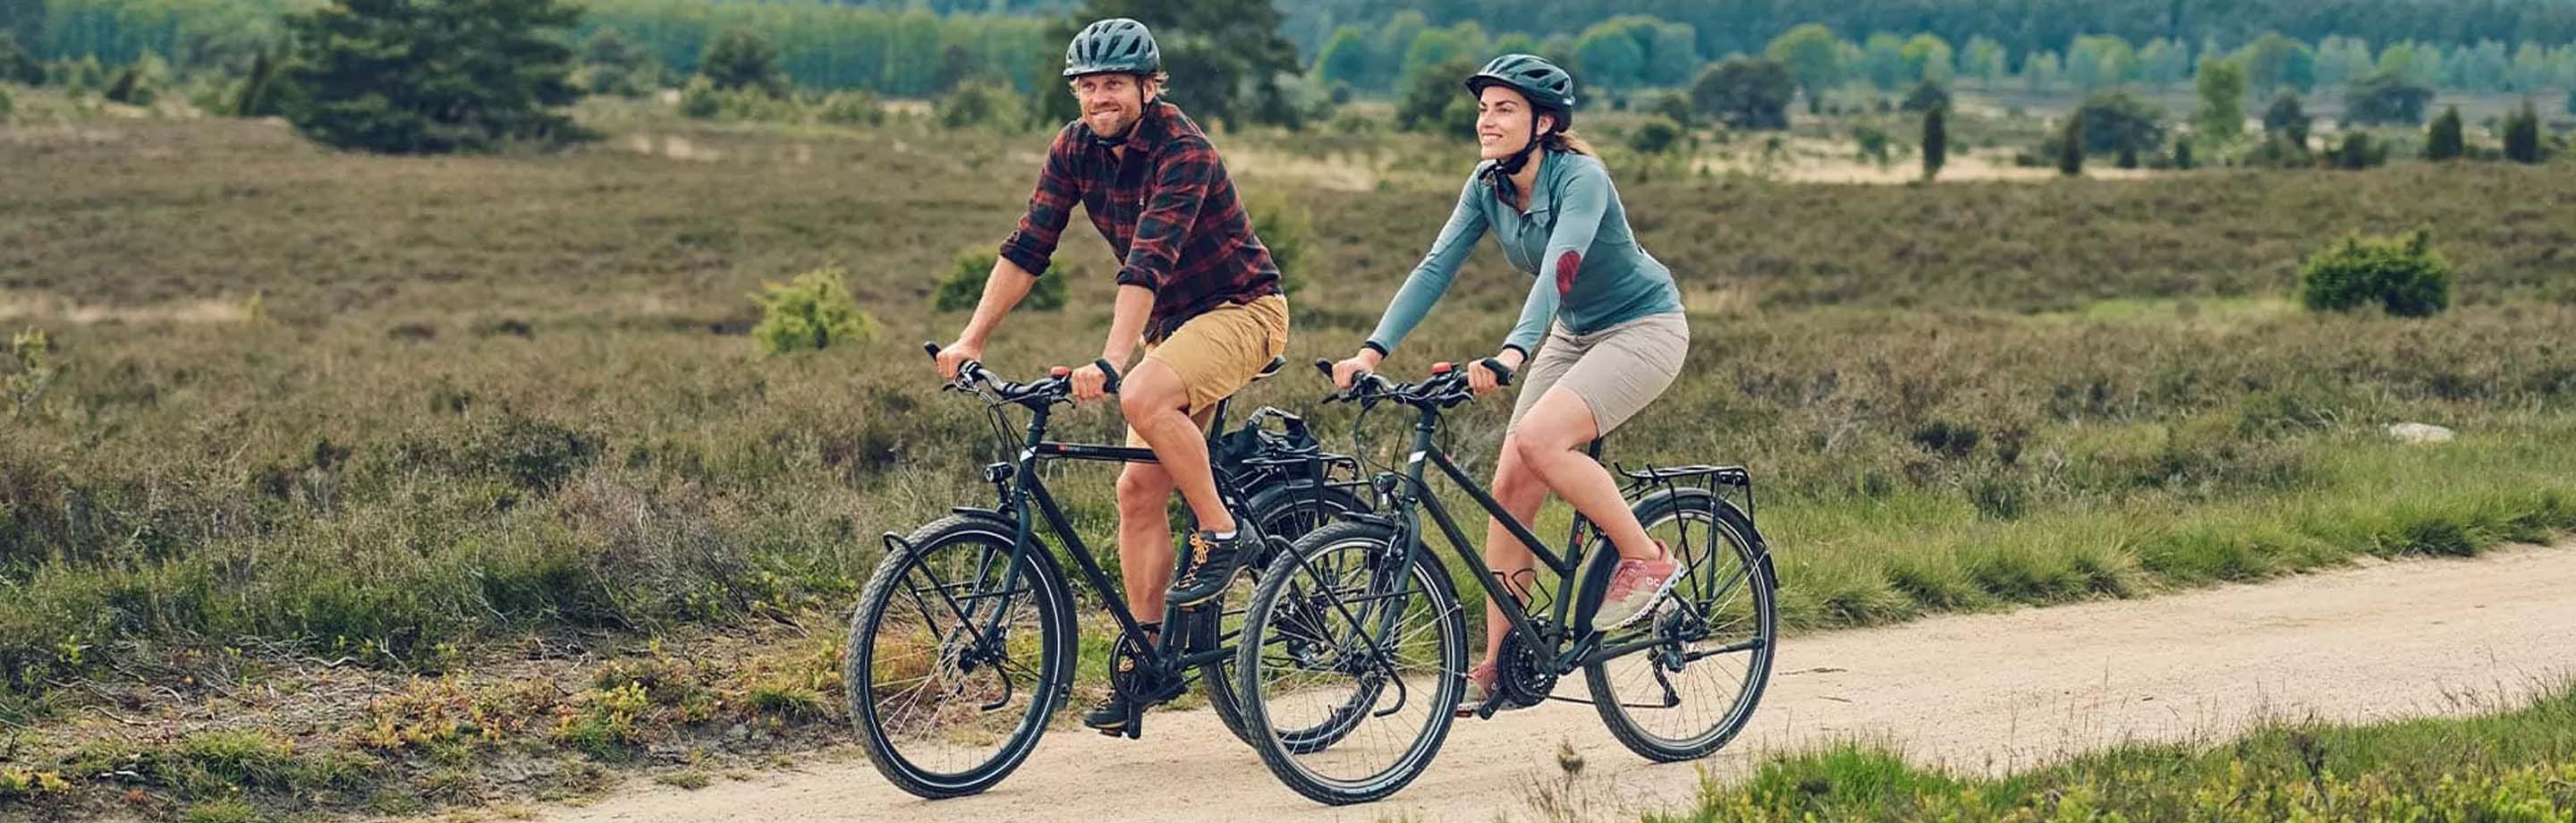 vsf fahrradmanufaktur - duurzame ecologische trekking- en toerfietsen